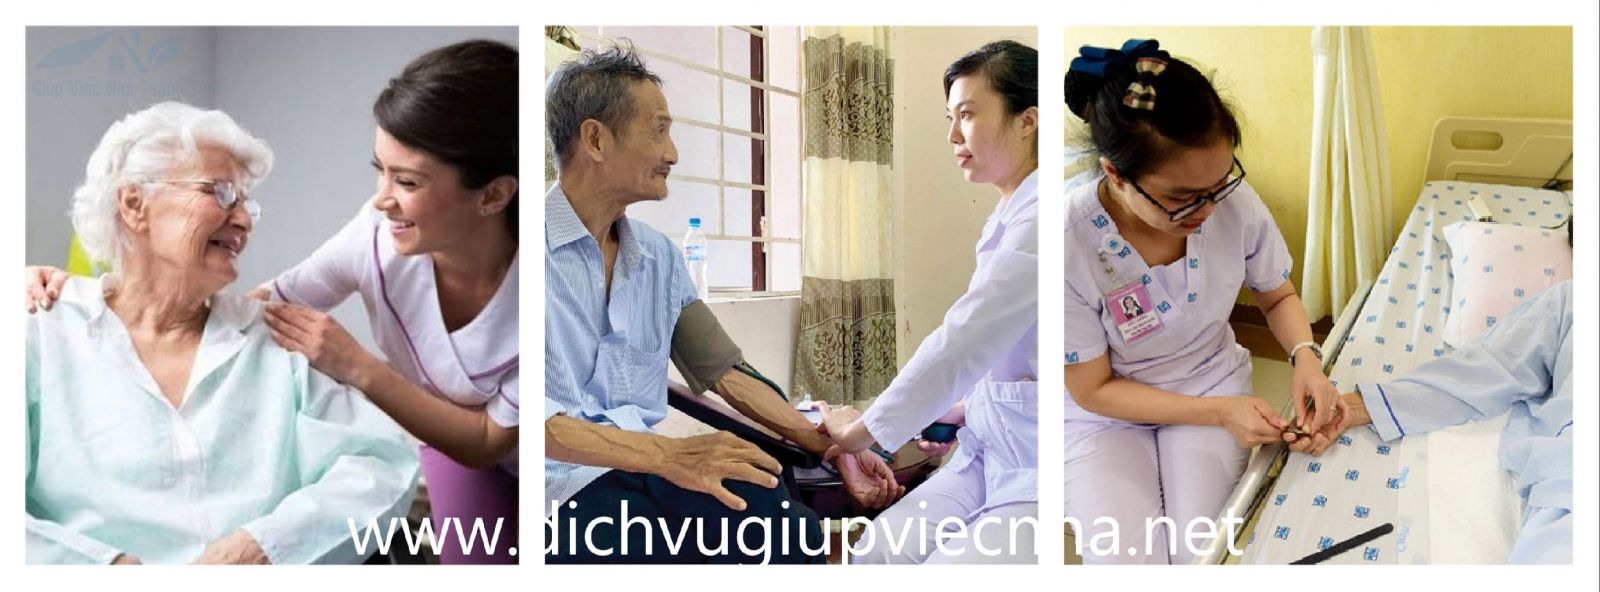 Giúp việc chăm sóc người già, nuôi người bệnh tại quận Phú Nhuận